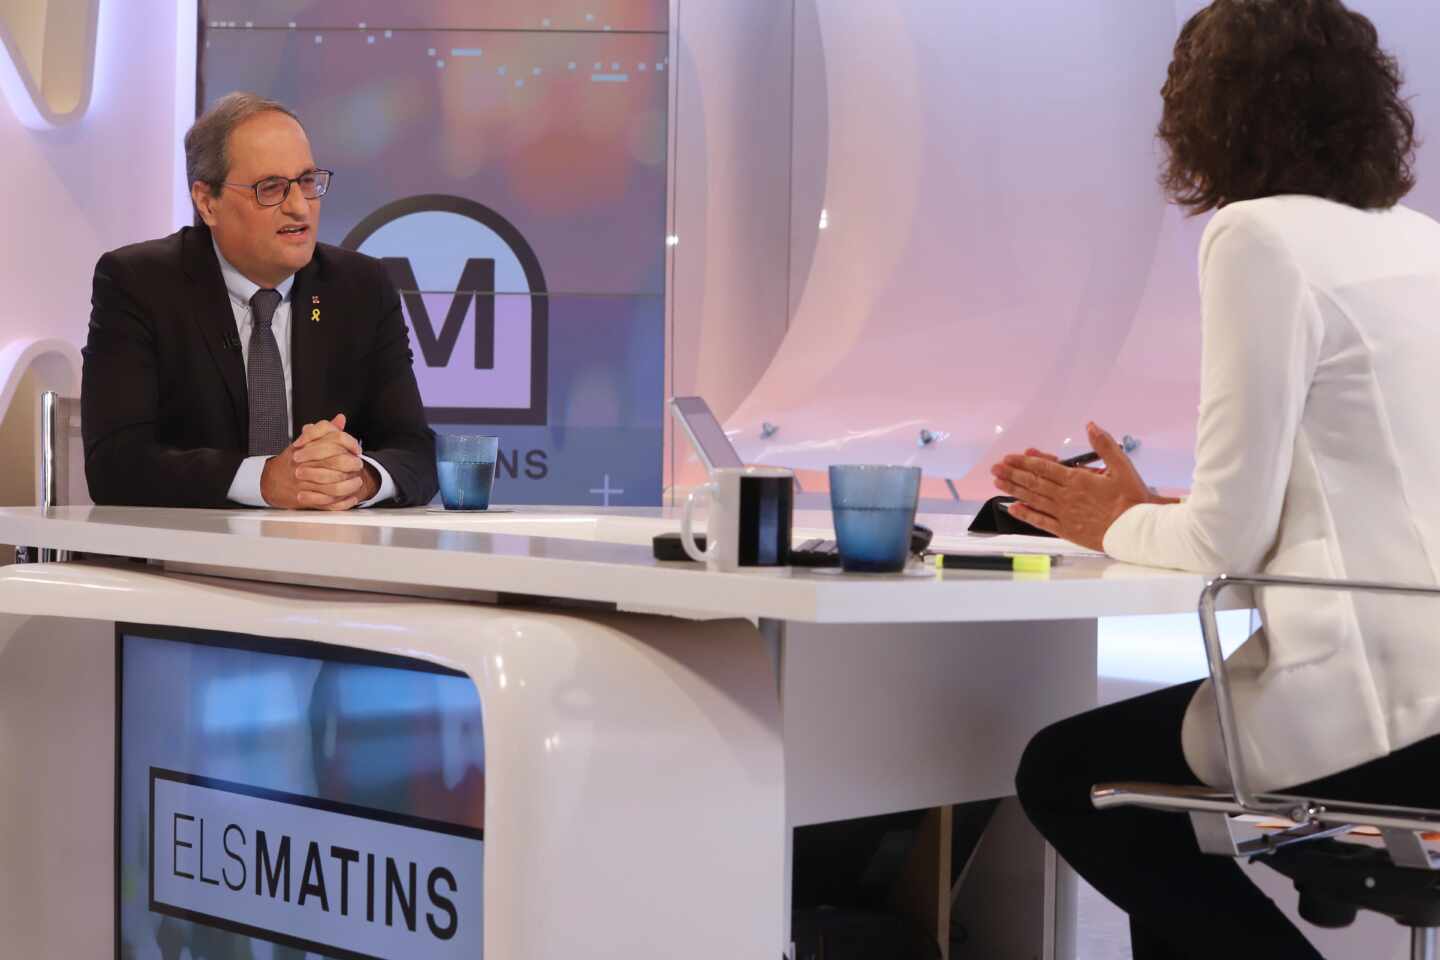 El PSC propone "refundar" una TV3 "altavoz mediático del independentismo"